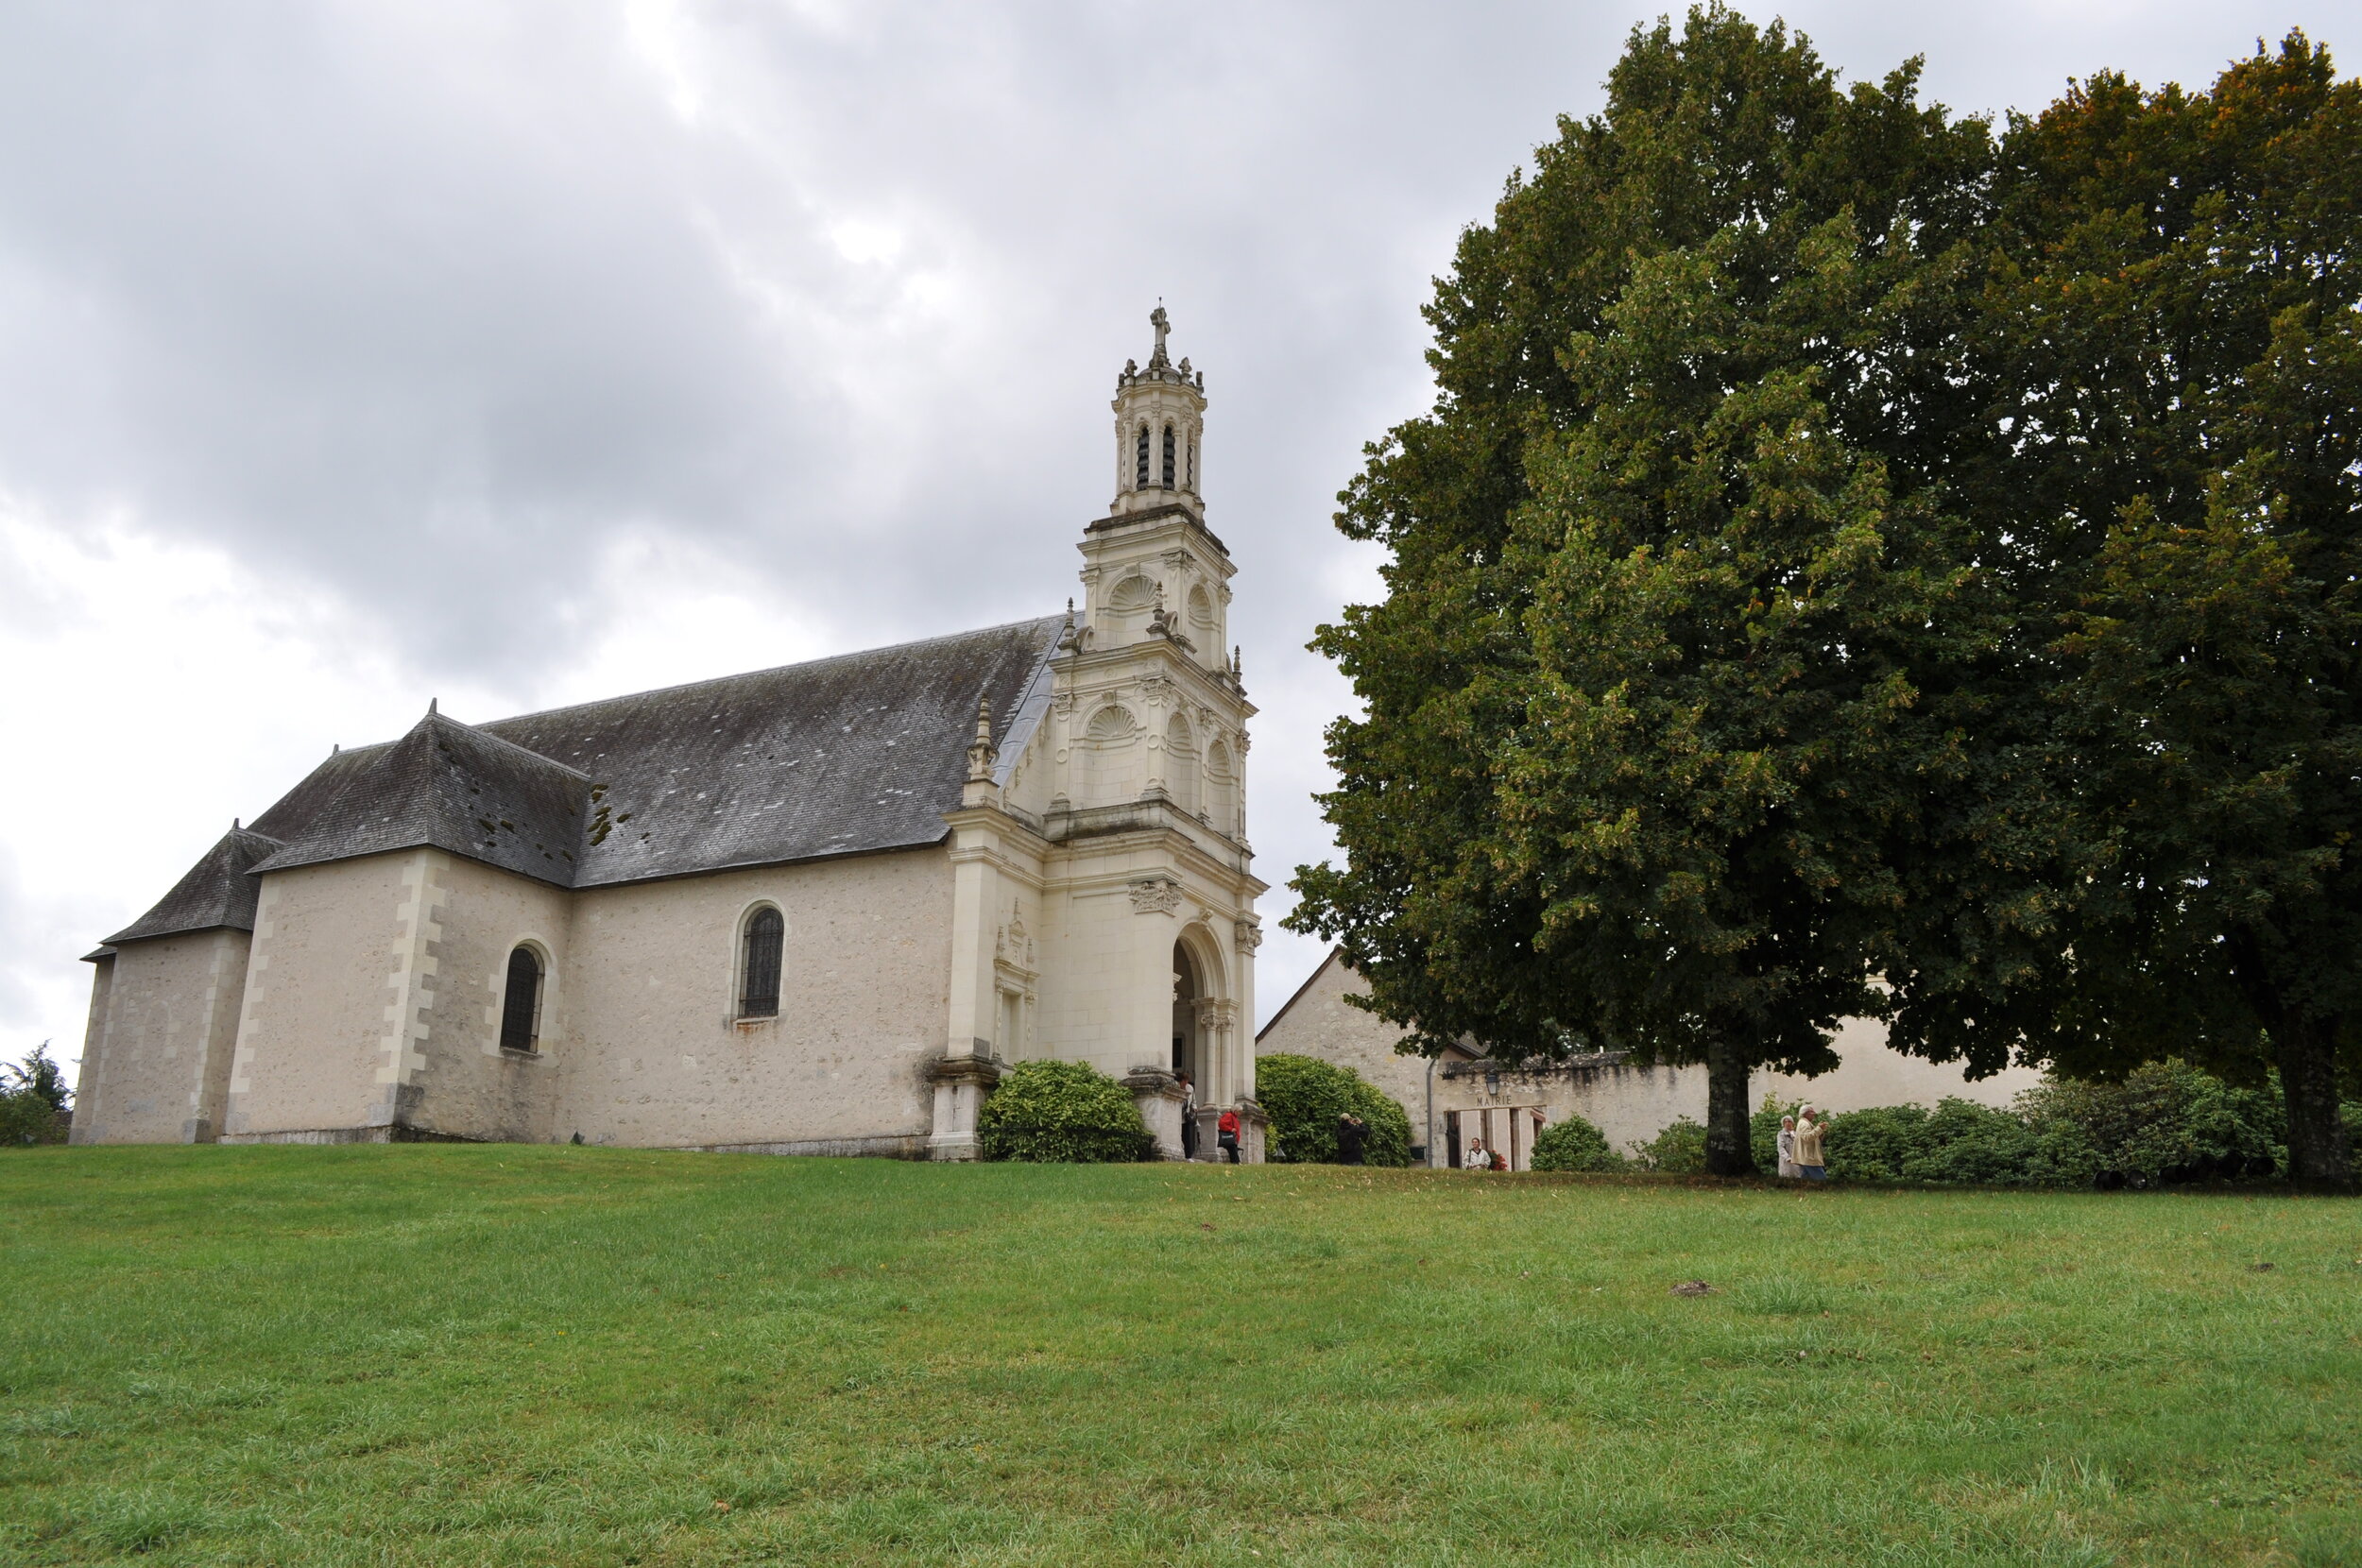 The chapel at Château de Chambord